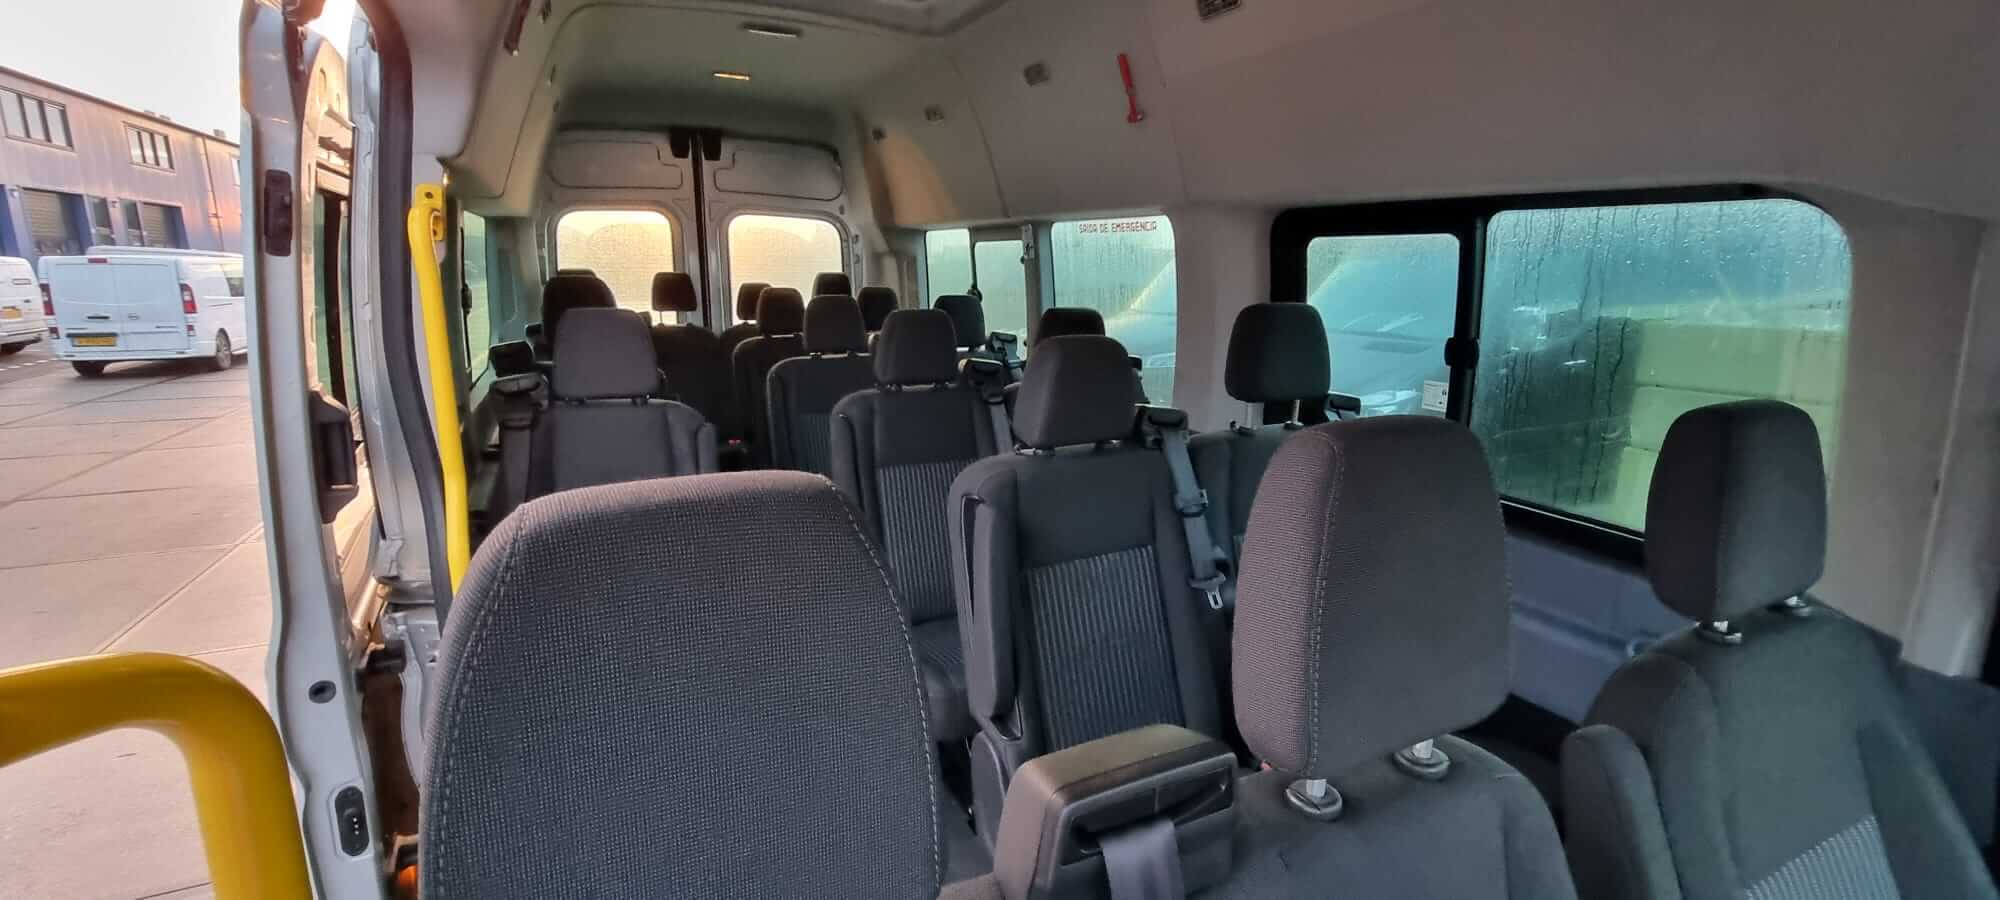 Huur een Minibus  (Ford Transit 2017) met 17 stoelen van Direct Vip Service uit Amsterdam 